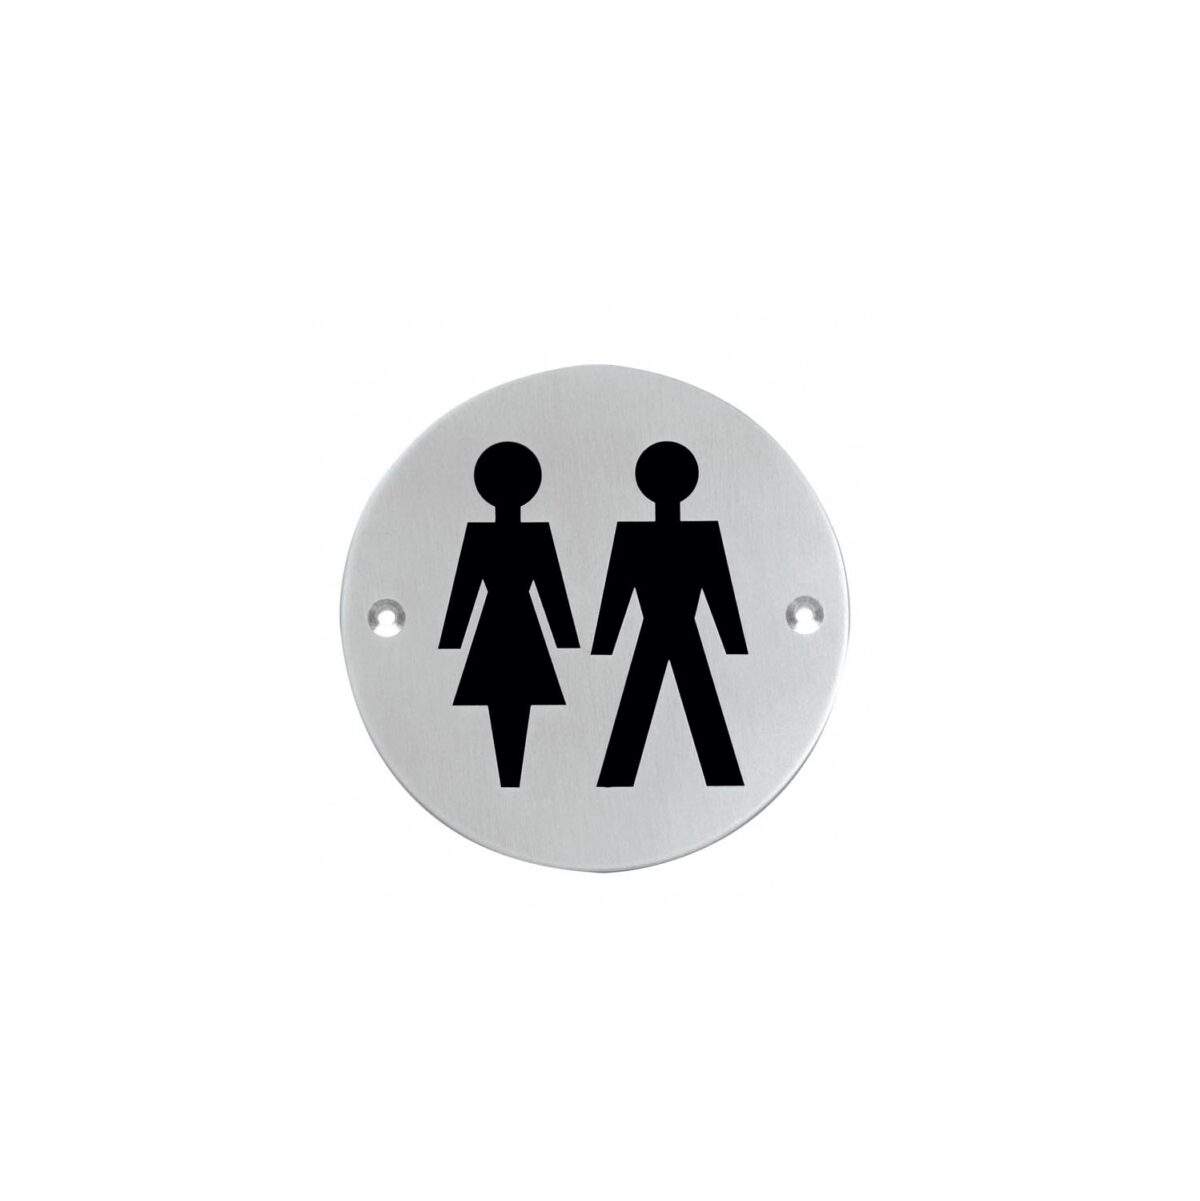 Intersteel Pictogram toilettes pour femmes et hommes rondes en acier inoxydable brossé